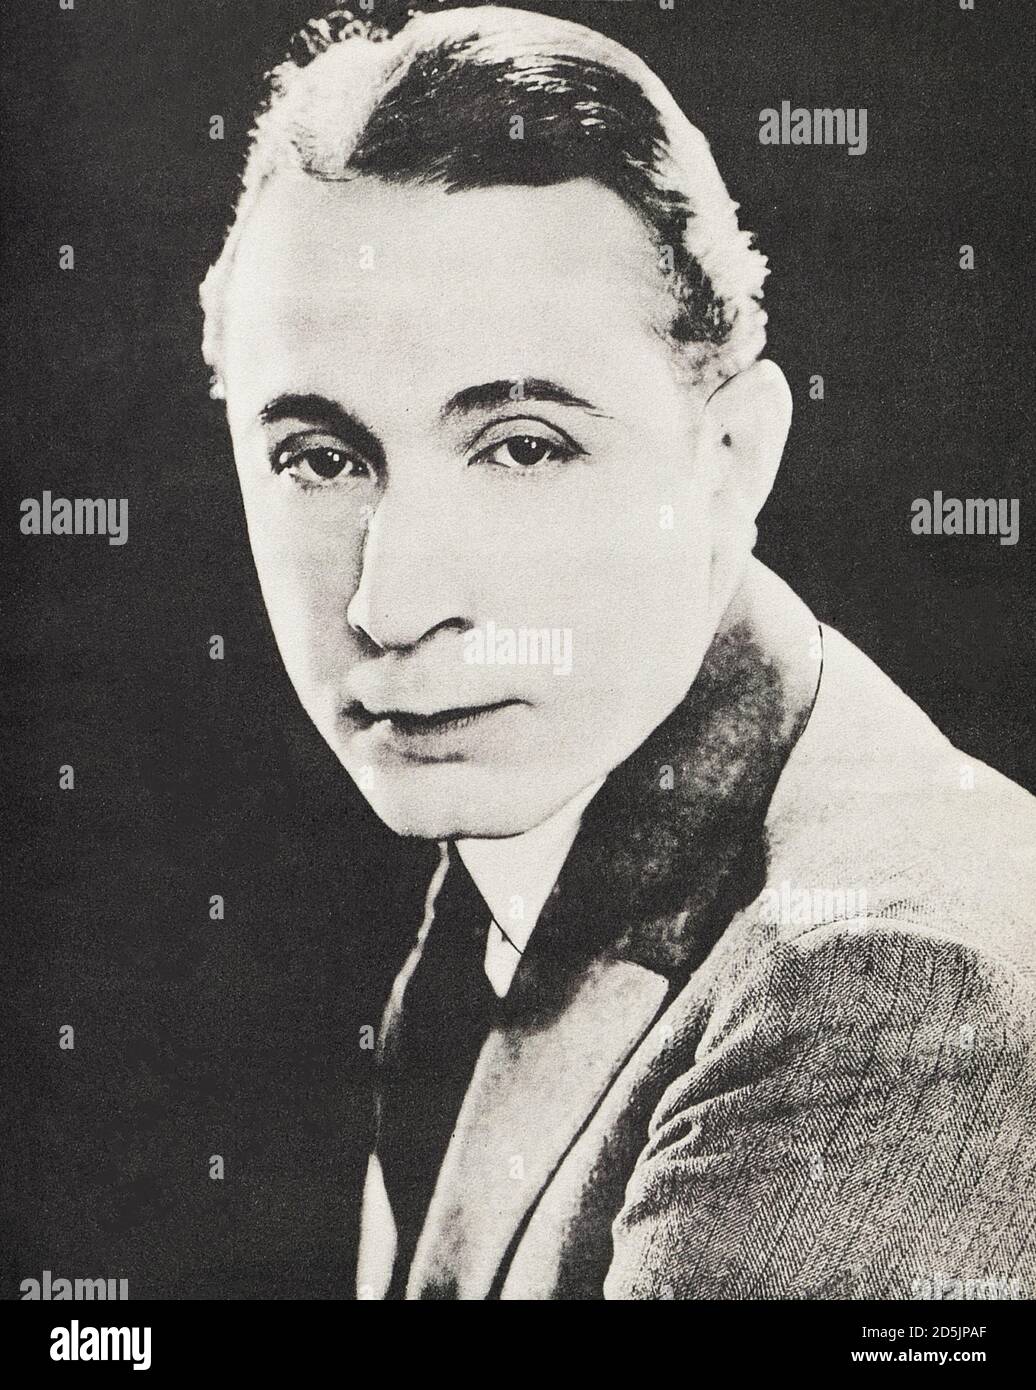 Monte Blue (nacido Gerard Montgomery Bluefeather; 1887 – 1963) fue un actor de cine que comenzó su carrera como líder romántico en la era silenciosa; y para decad Foto de stock